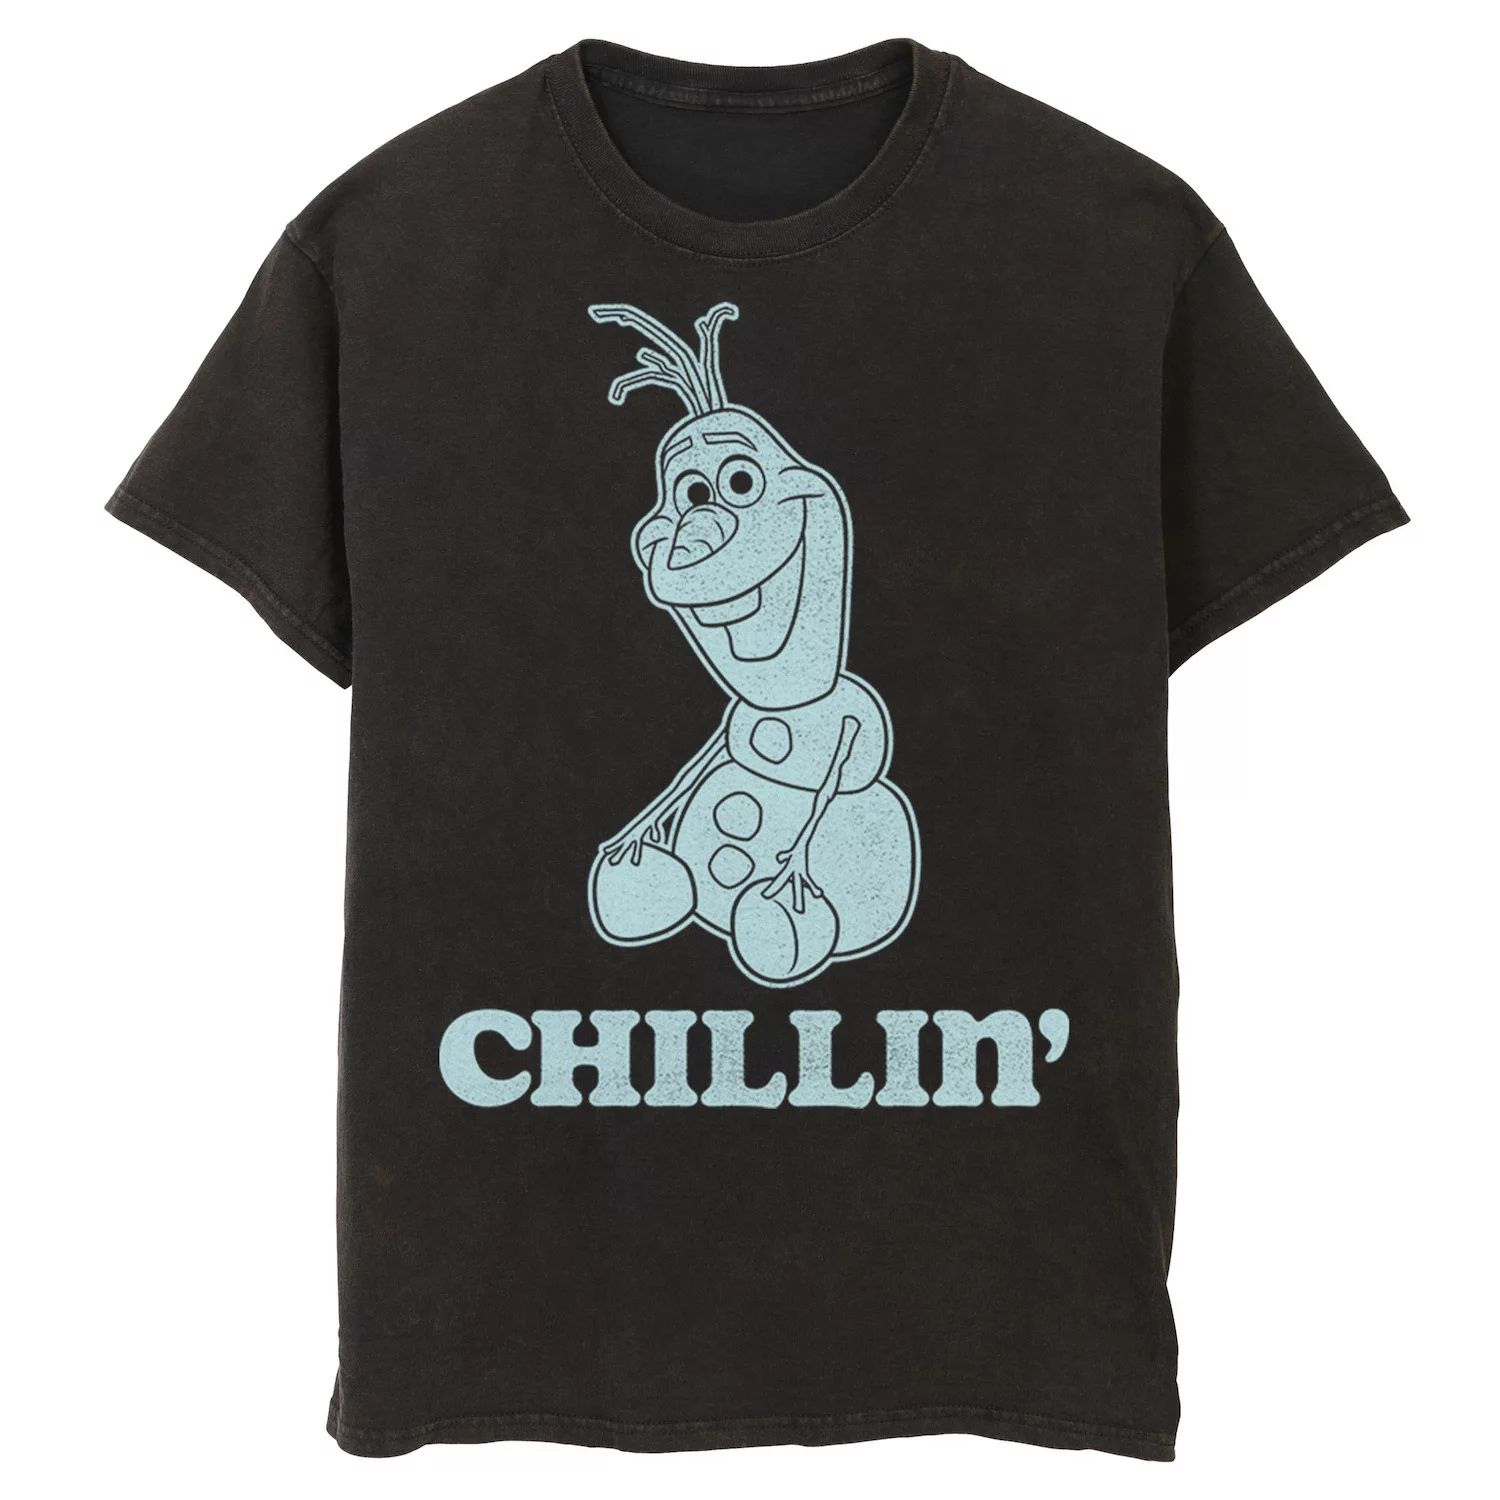 Мужская футболка с портретом Disney Frozen Olaf Chillin'